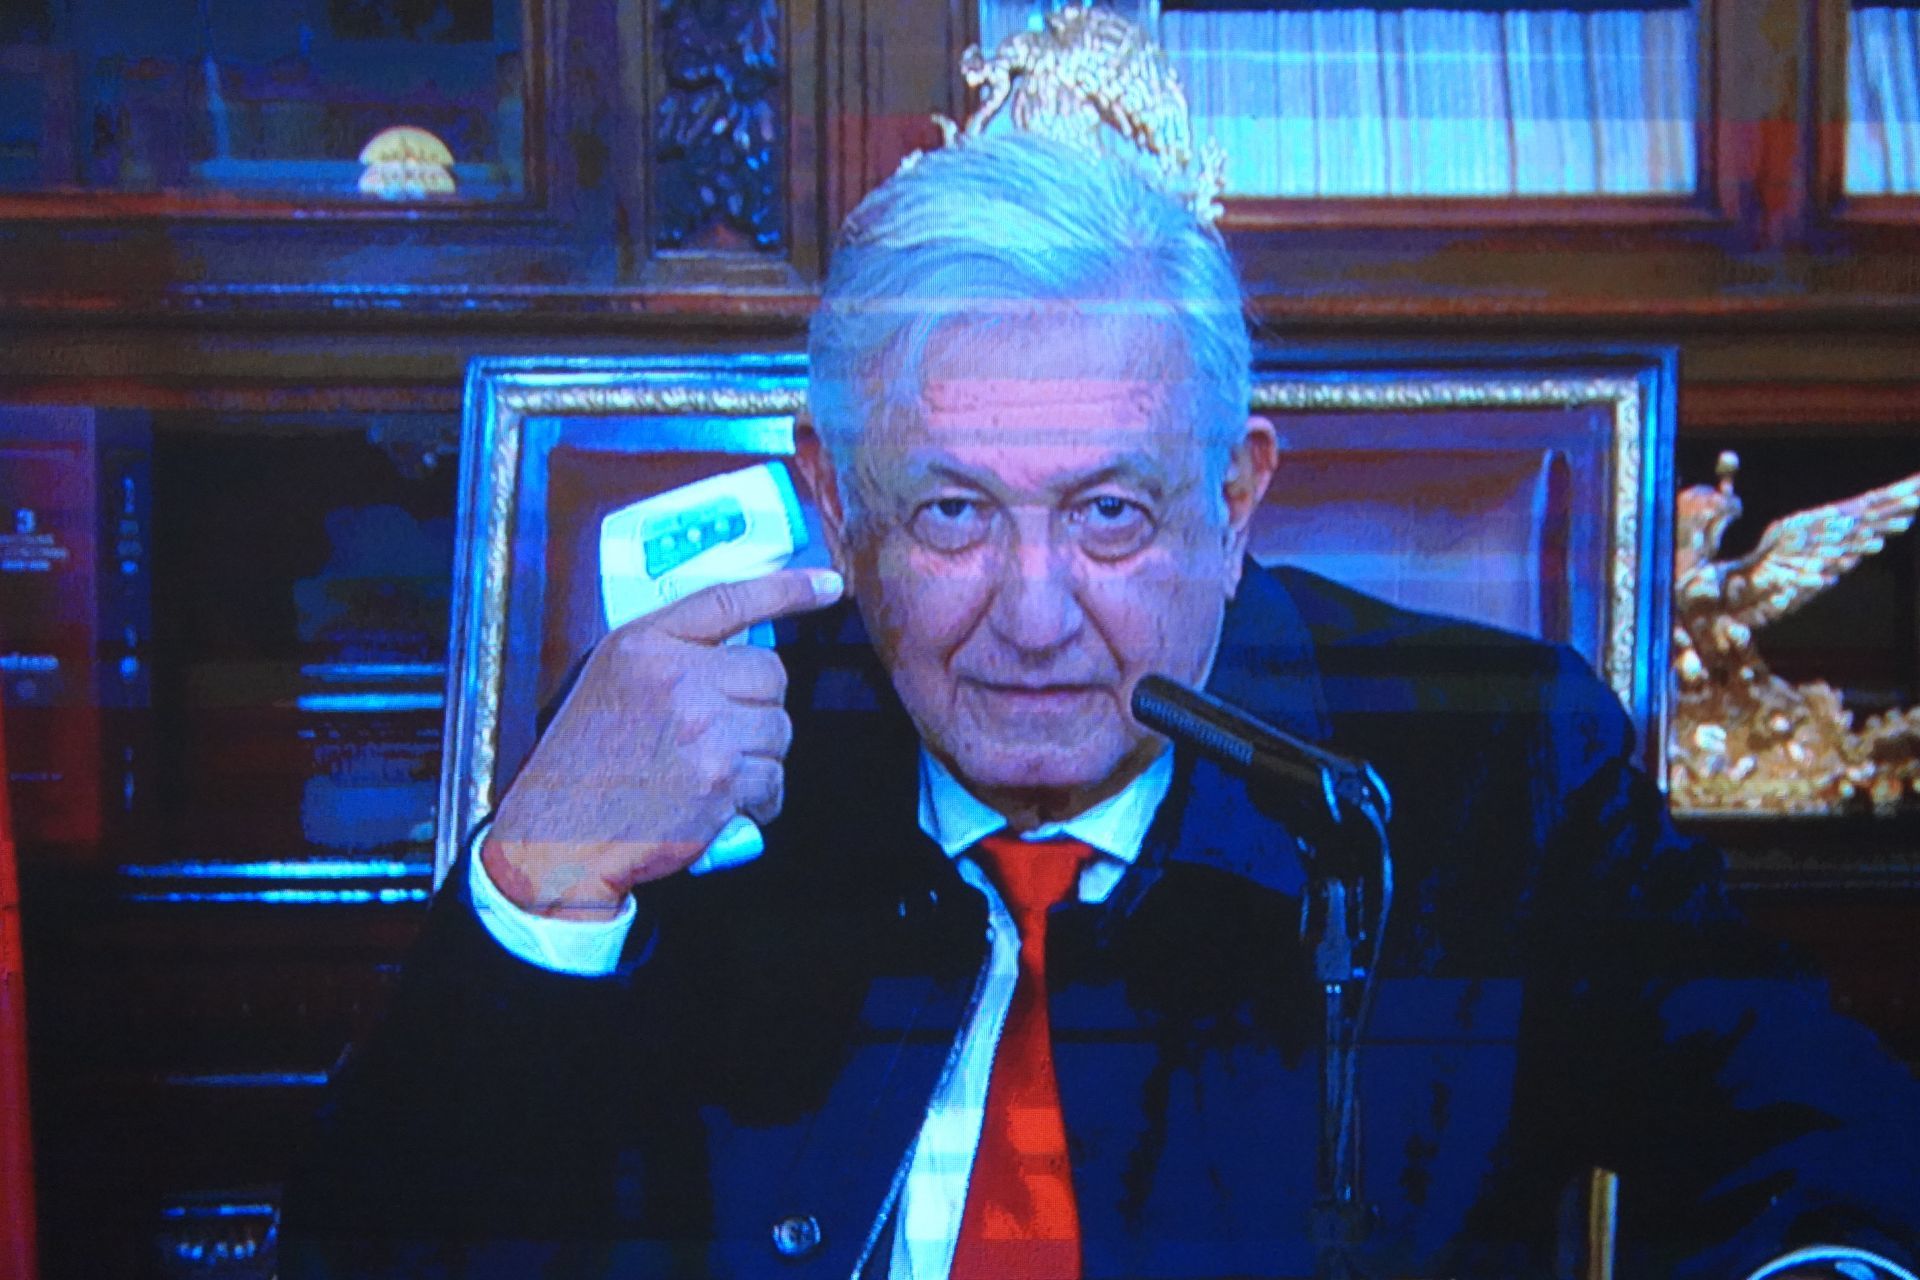 Tras confirmar su contagio de COVID-19, por segunda ocasi{on, el presidente Andrés Manuel López Obrador, participó en su habitual conferencia matutina del 11 de enero de manera virtual (FOTO: GALO CAÑAS/CUARTOSCURO.COM)